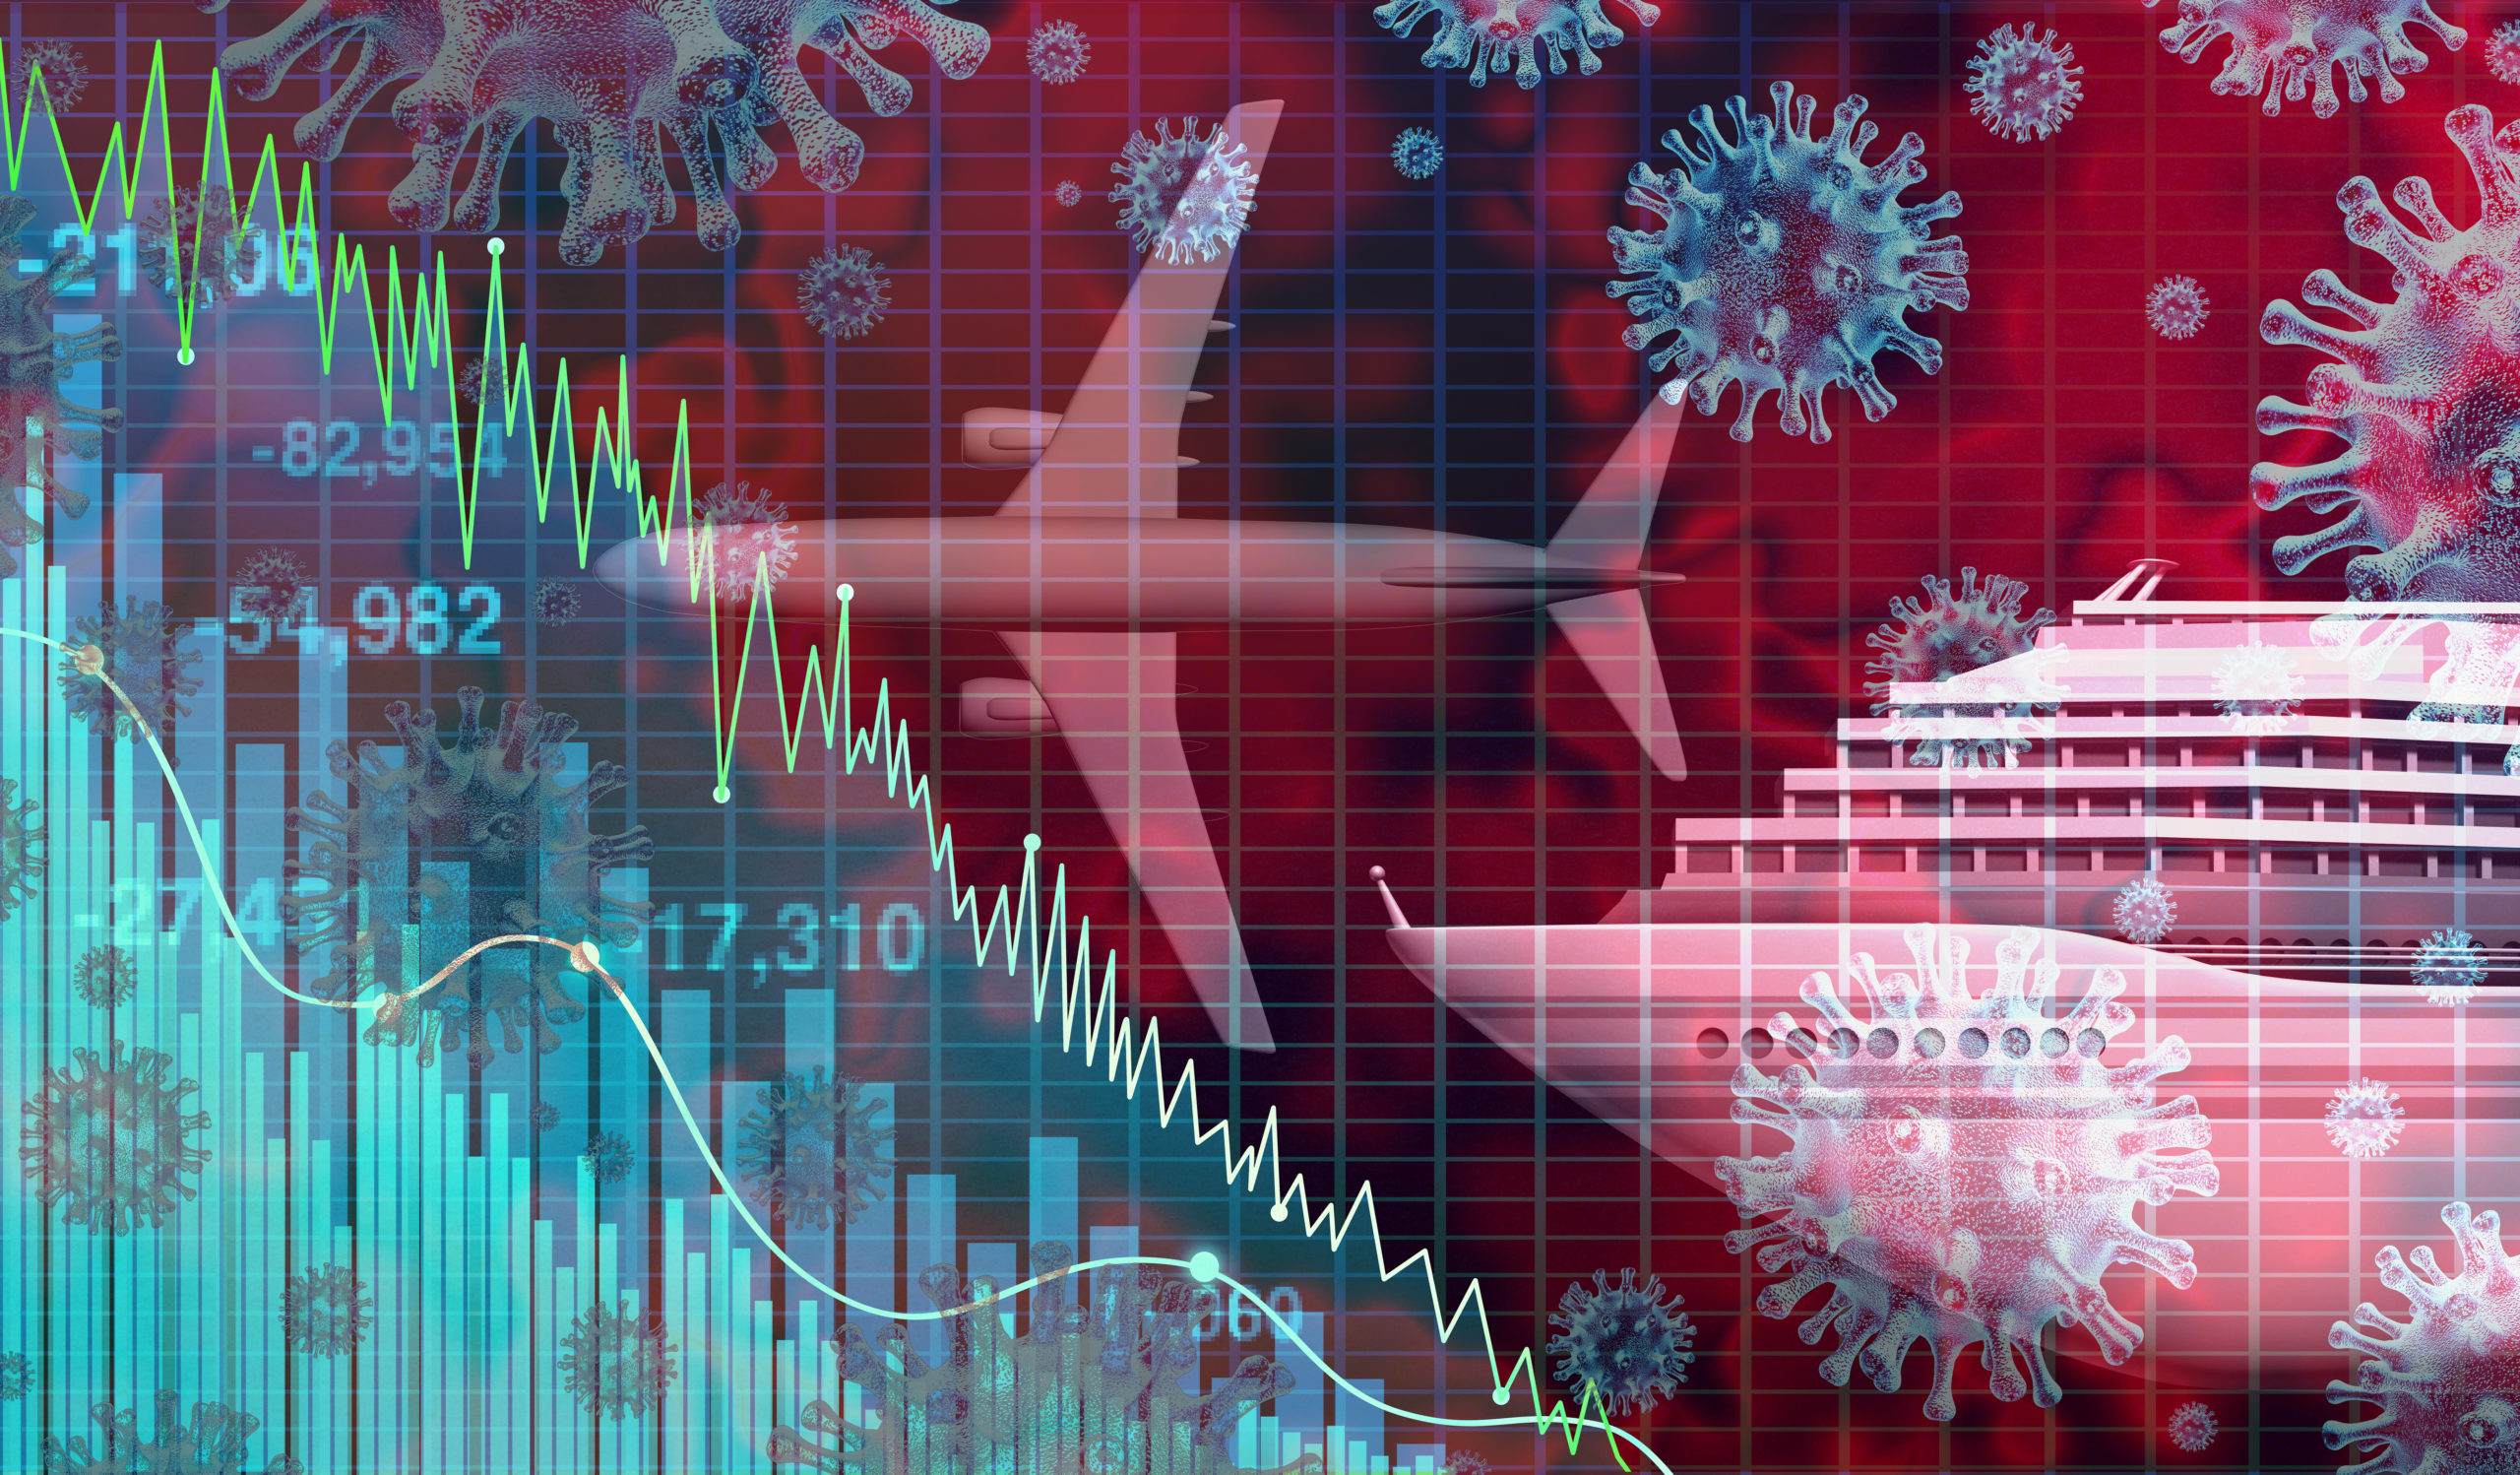 Cruise Stocks Get Pummeled Amid Government Warning, Coronavirus Worries